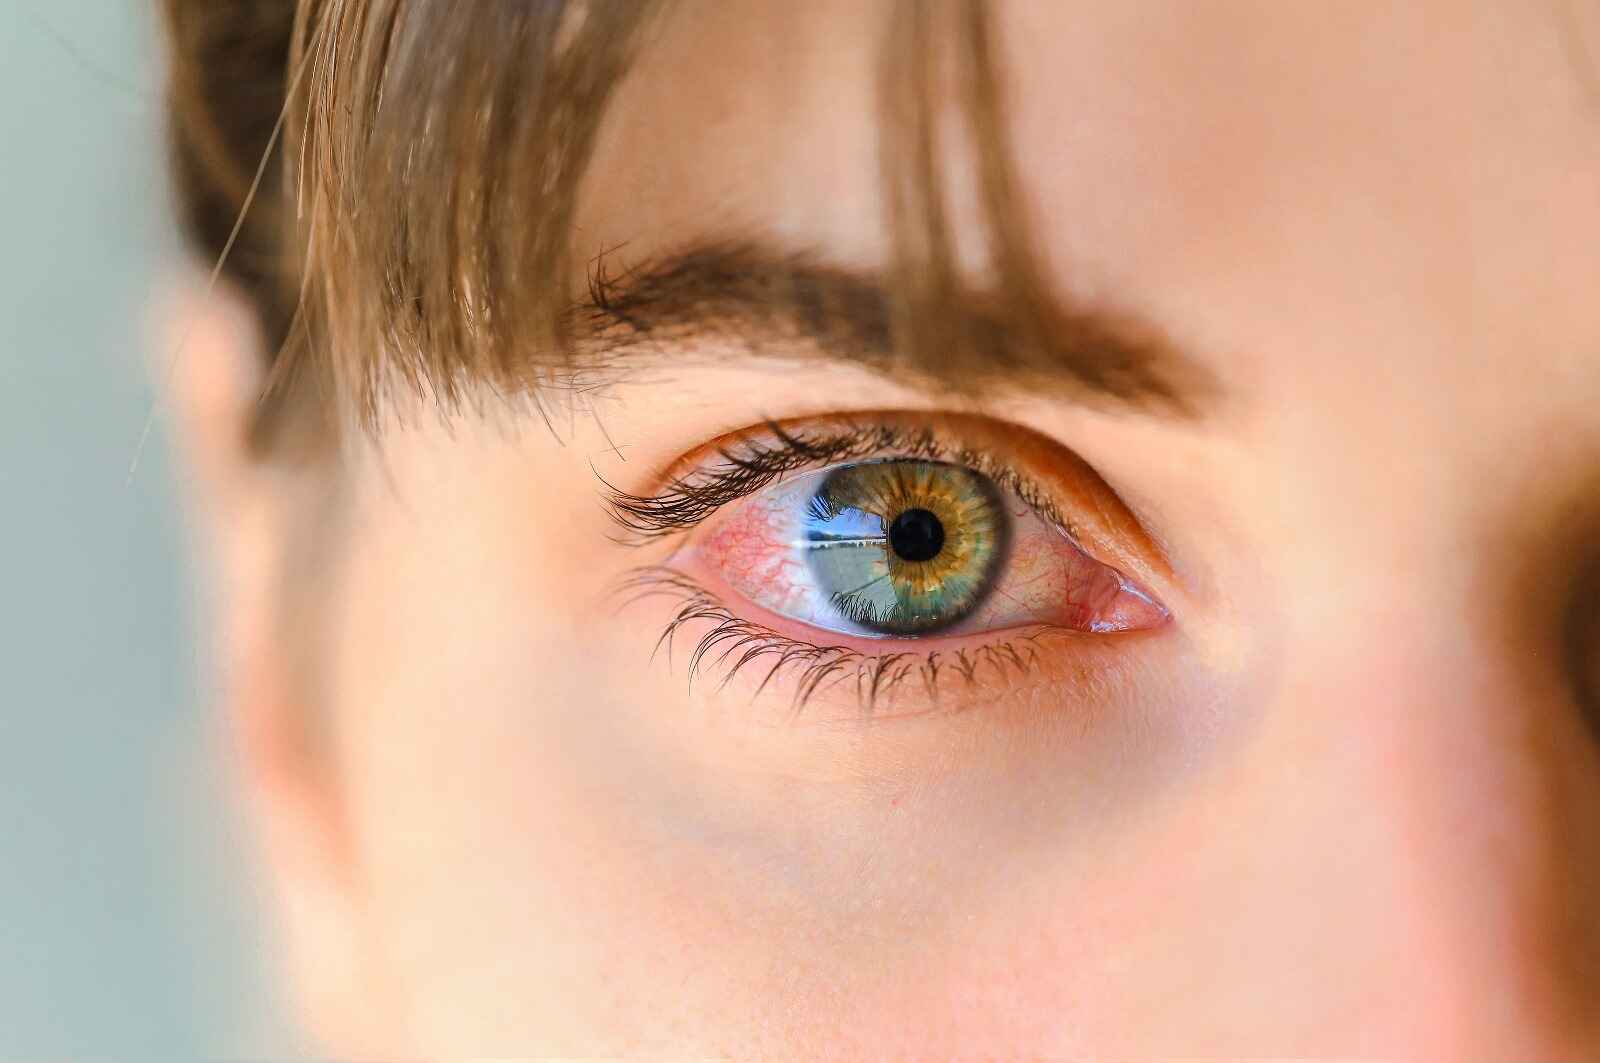 Common symptoms of red eyes include eye irritation, bloodshot eyes, and dry eyes.